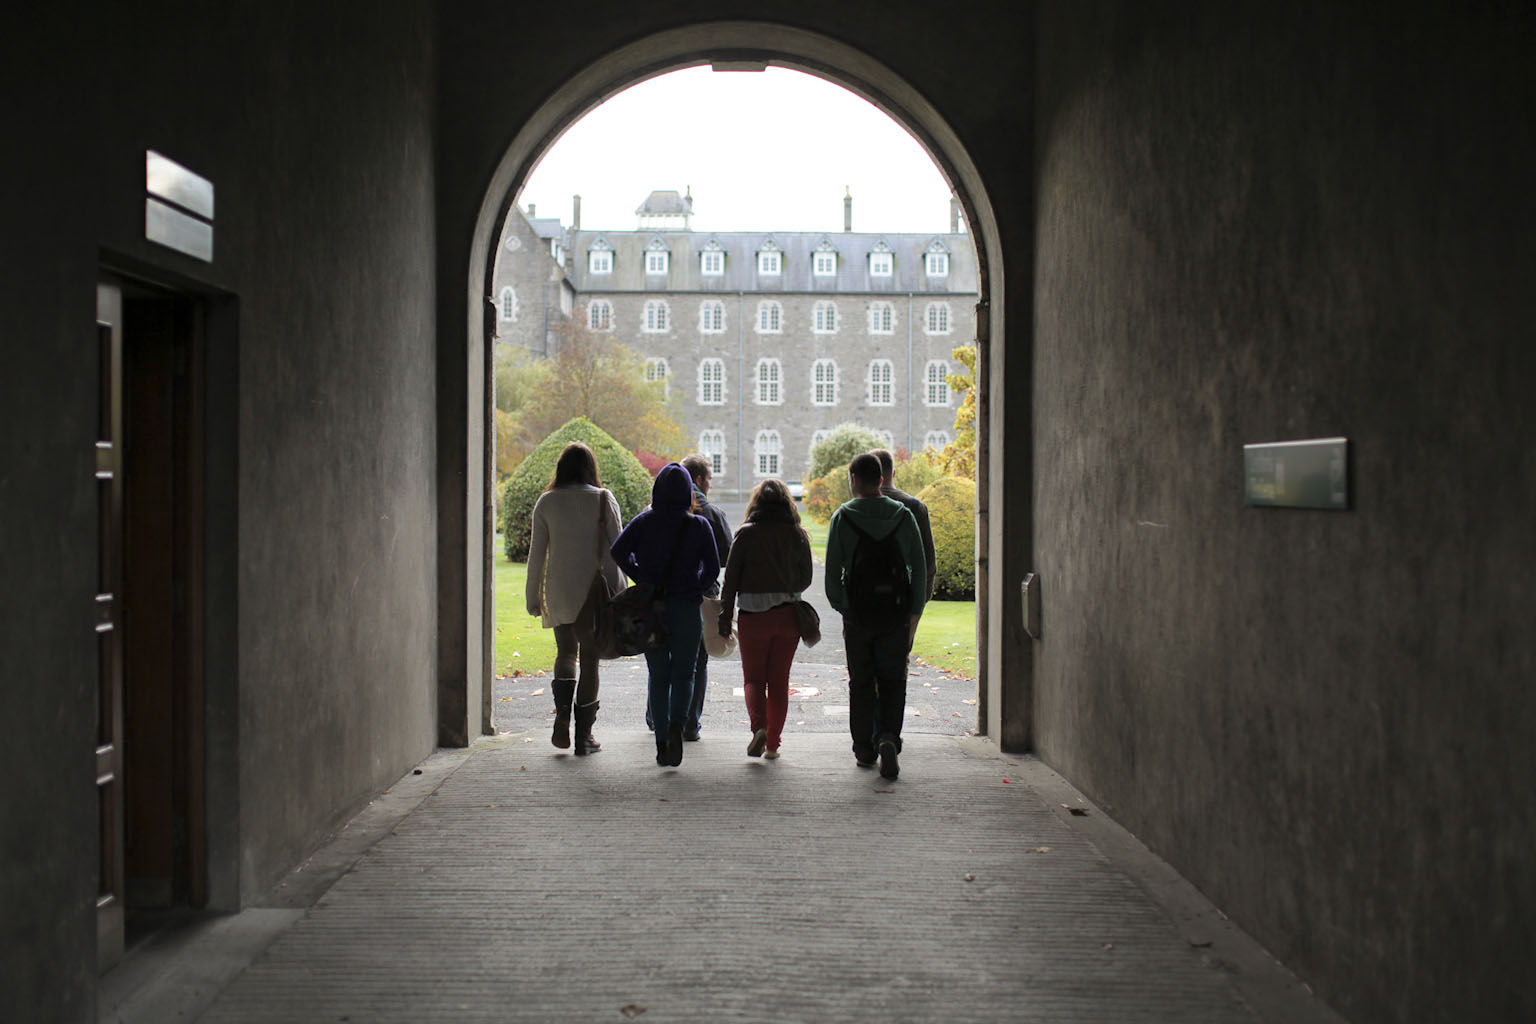 Archway on Long Corridor - Bealach Áirseach tríd An Dorchla Fada